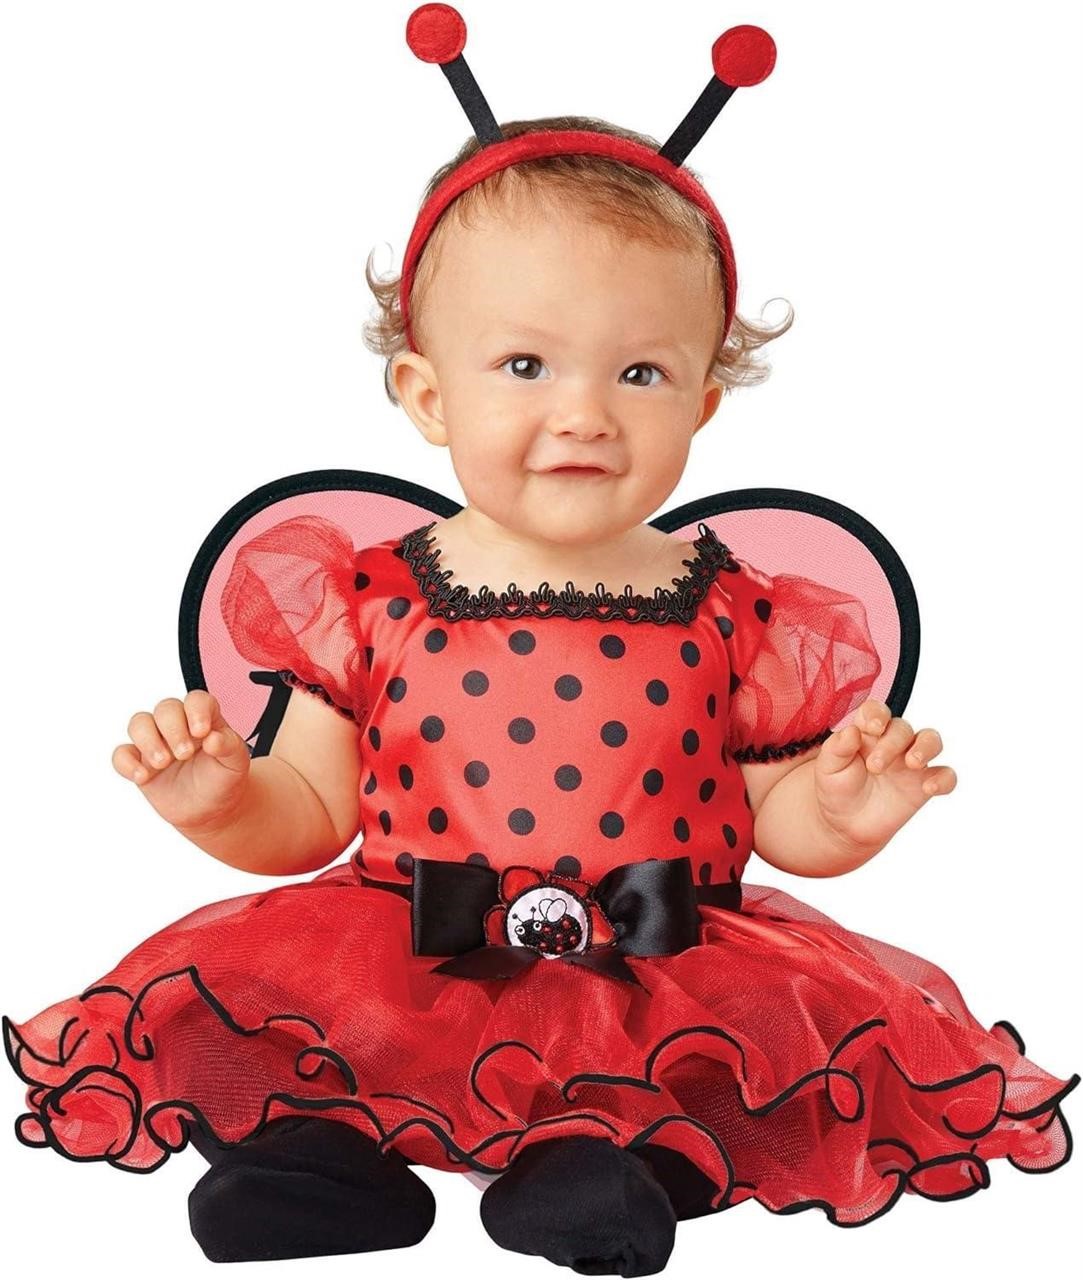 Infant Little Ladybug Costume